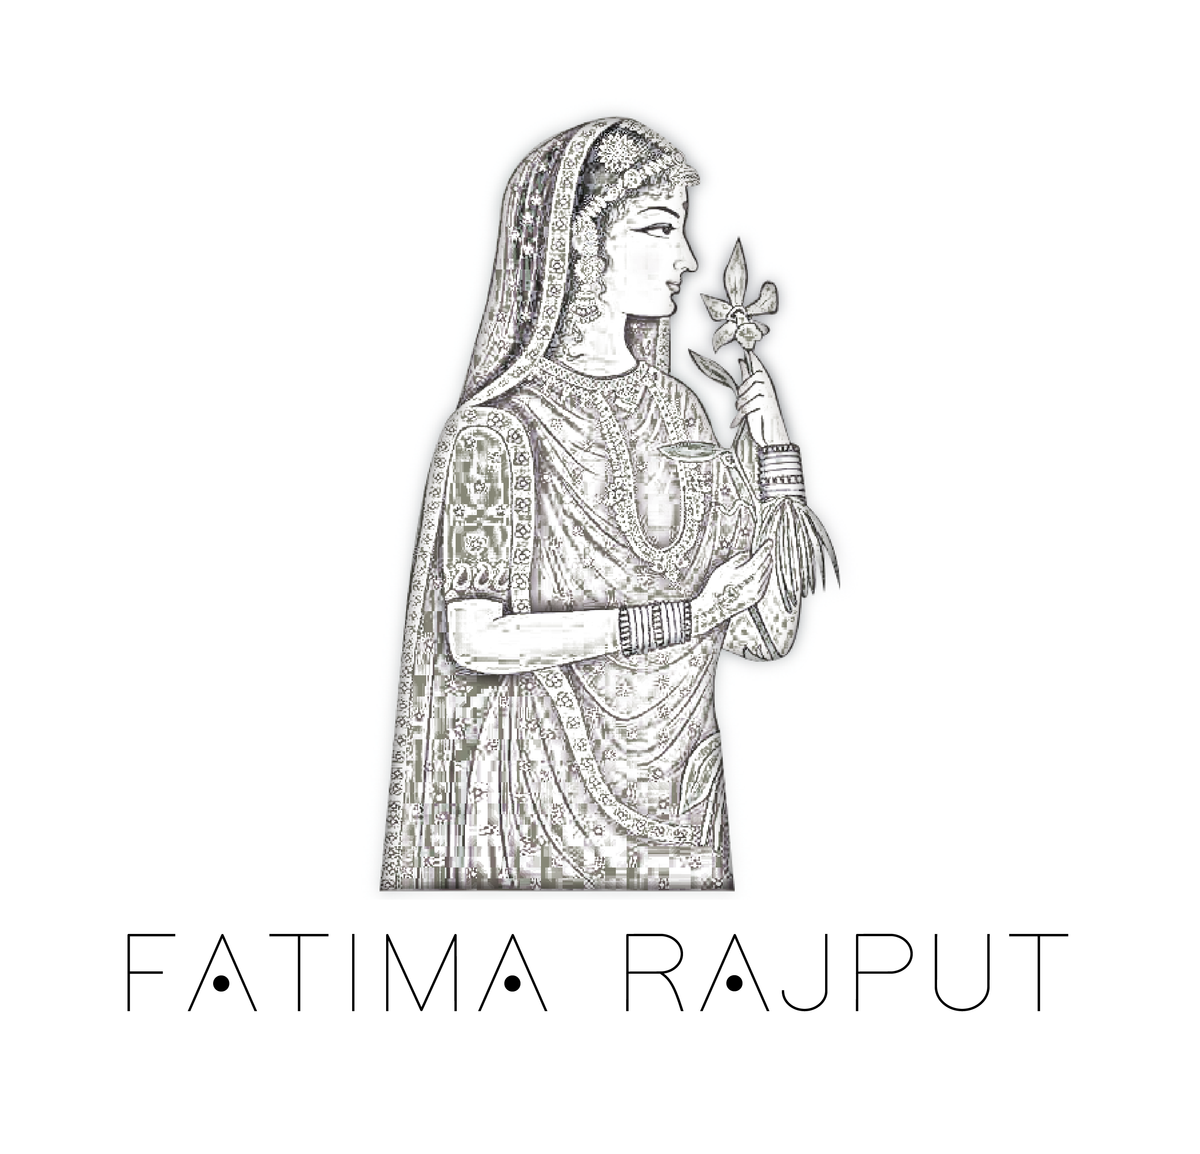 Fatima Rajput